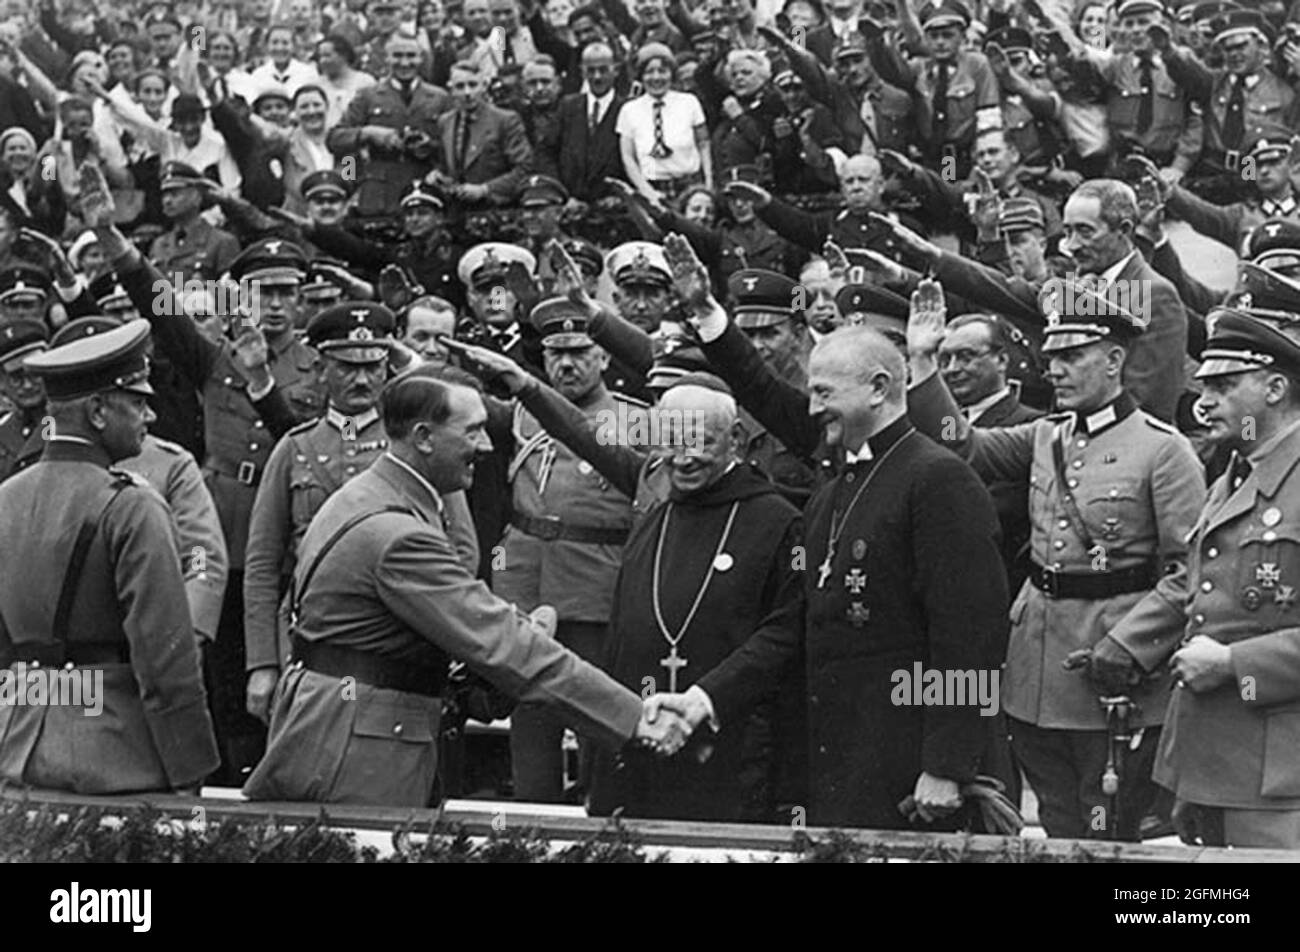 Hitler entre les mains de dignitaires catholiques en Allemagne dans les années 1930 Banque D'Images